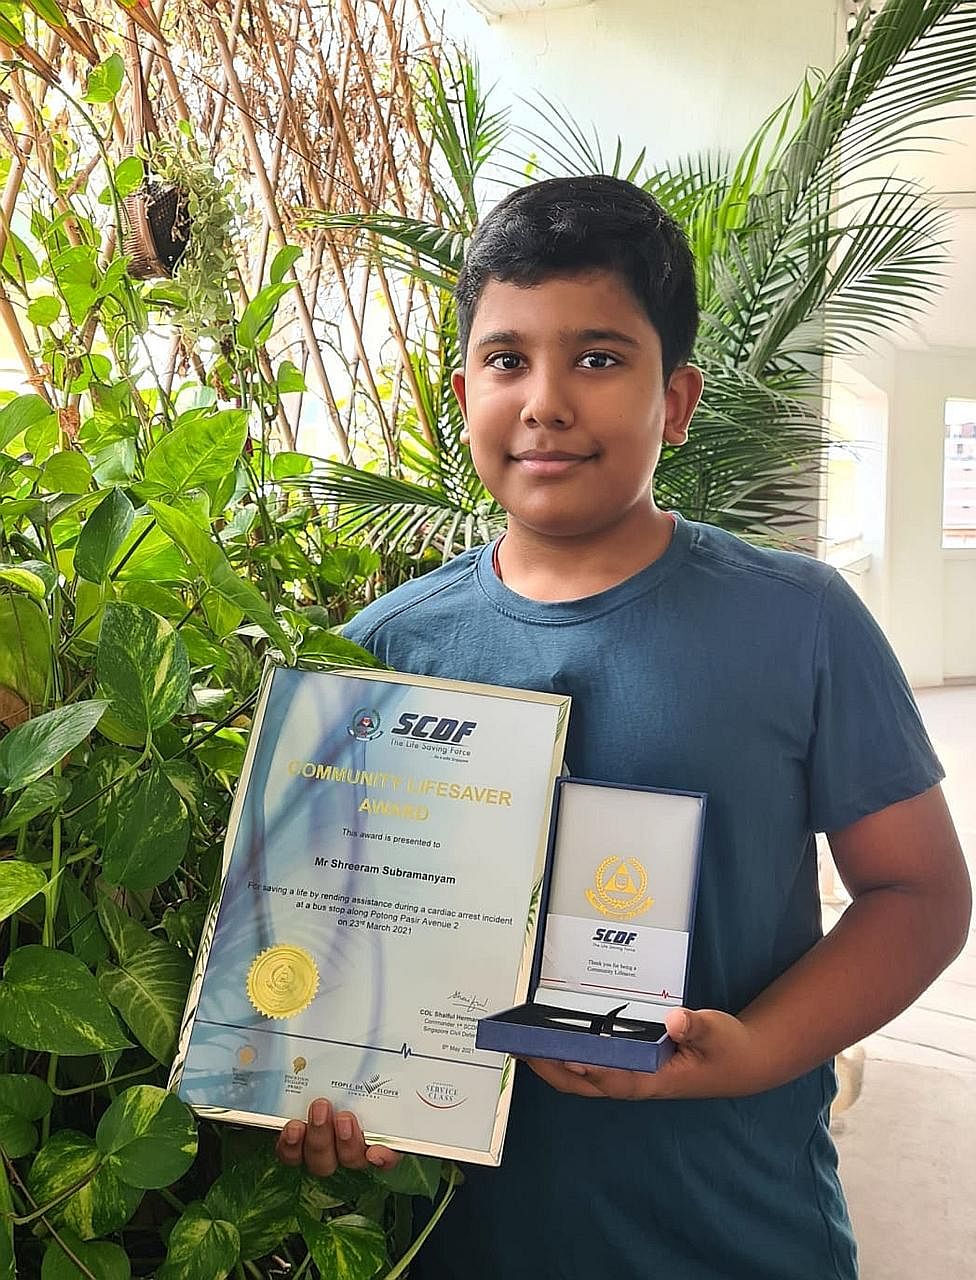 Shreeram Subramanyam is one of the youngest recipients of the Singapore Civil Defence Force Community Lifesaver Award. PHOTO: COURTESY OF SUBHATHIRA SAMBANDAN